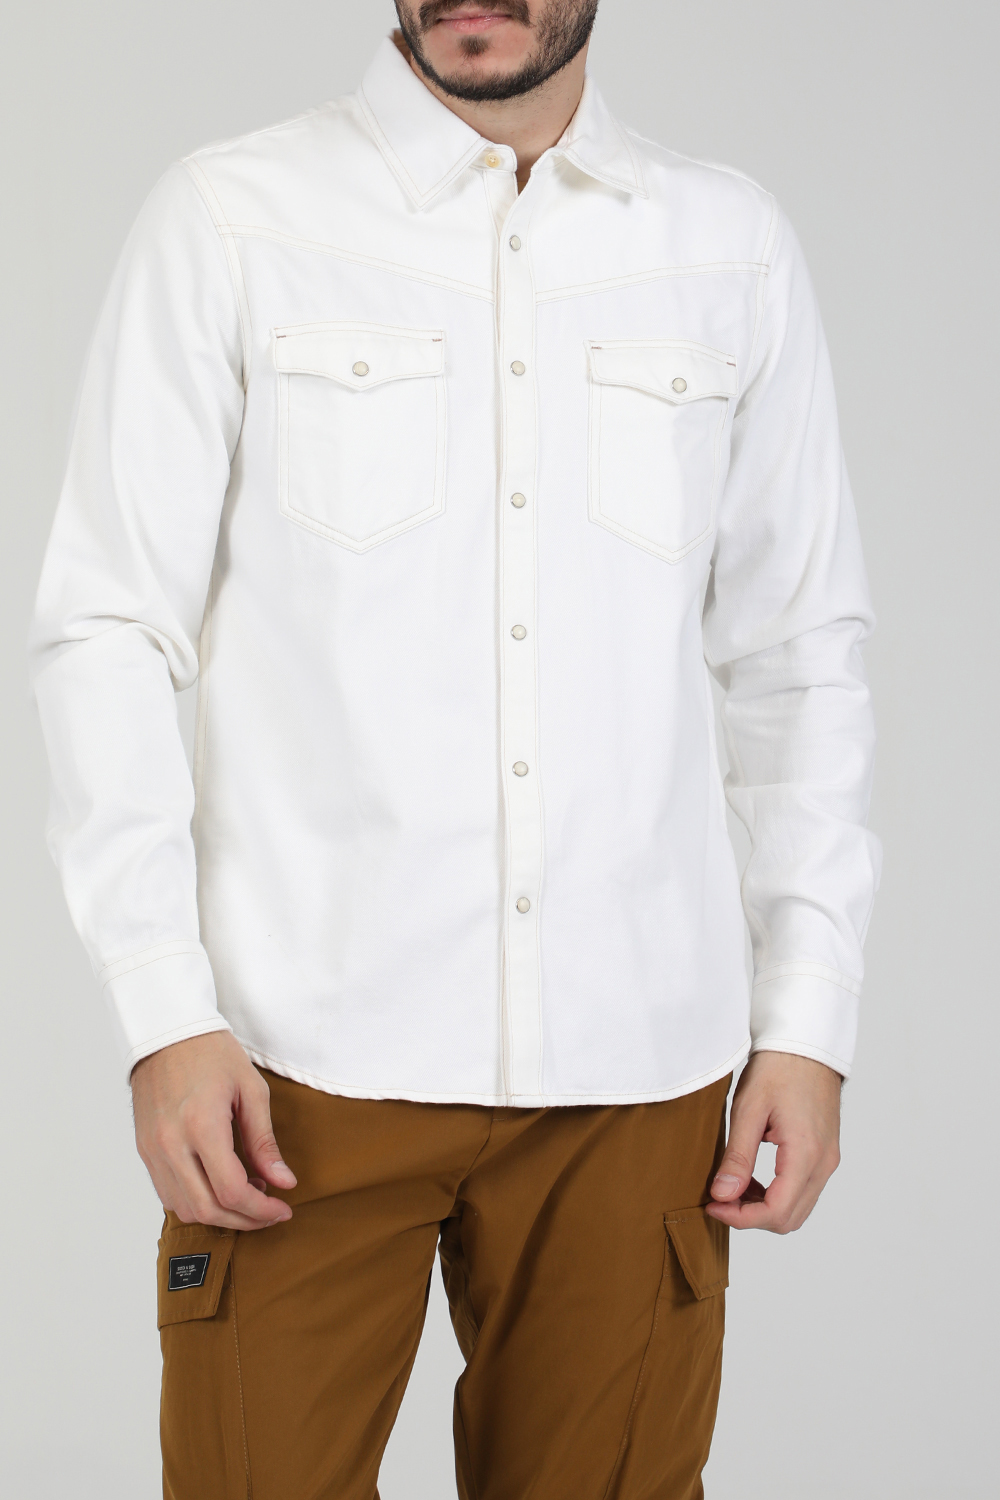 SCOTCH & SODA – Ανδρικό jean πουκάμισο SCOTCH & SODA REGULAR FIT – AMS denim western λευκό 1821066.0-9191